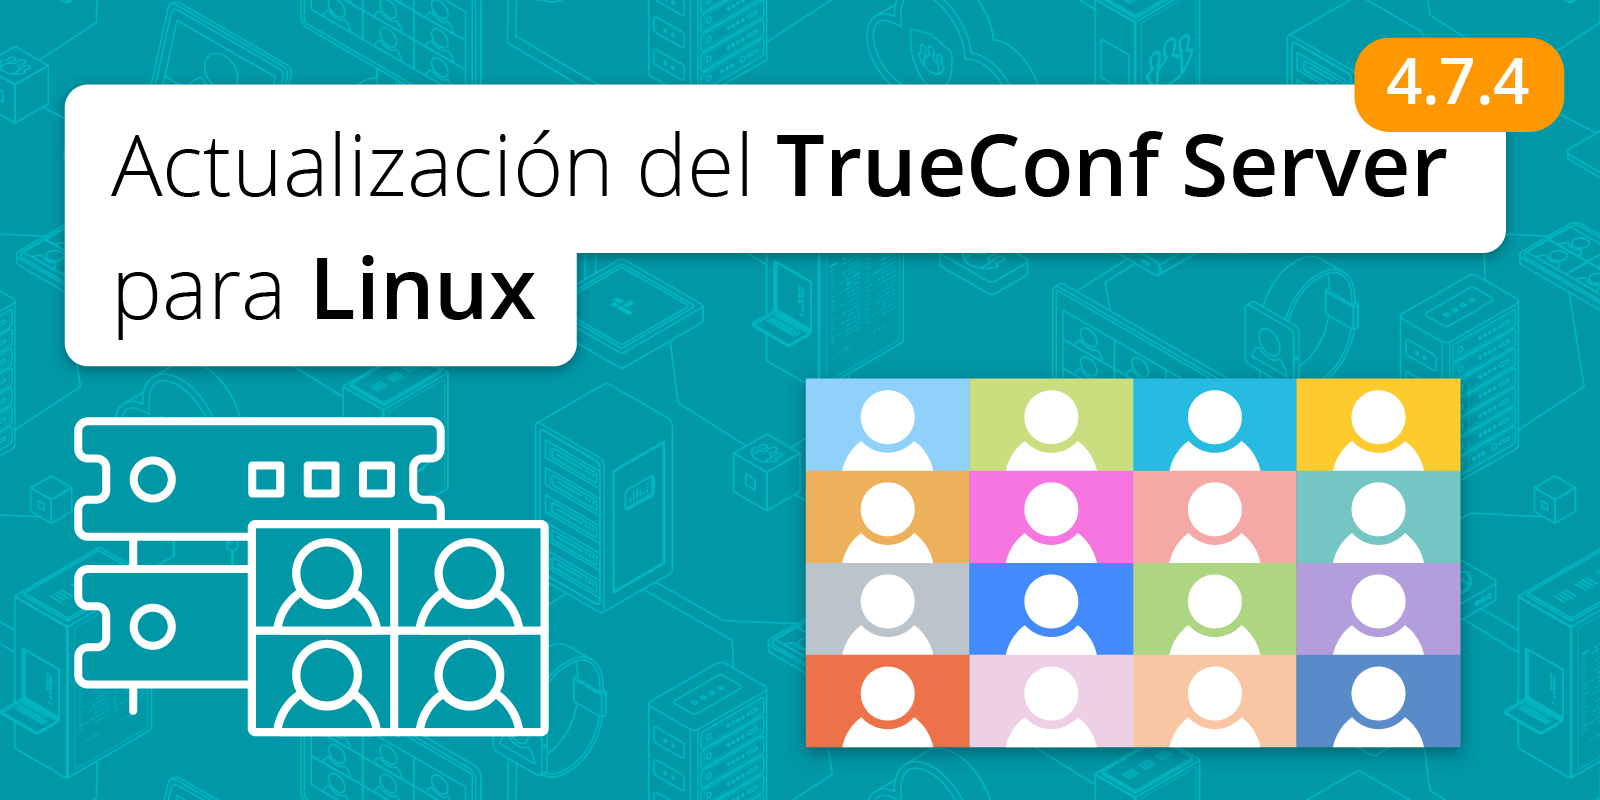 TrueConf Server 4.7.4 para Linux: compatibilidad con Debian 11 4